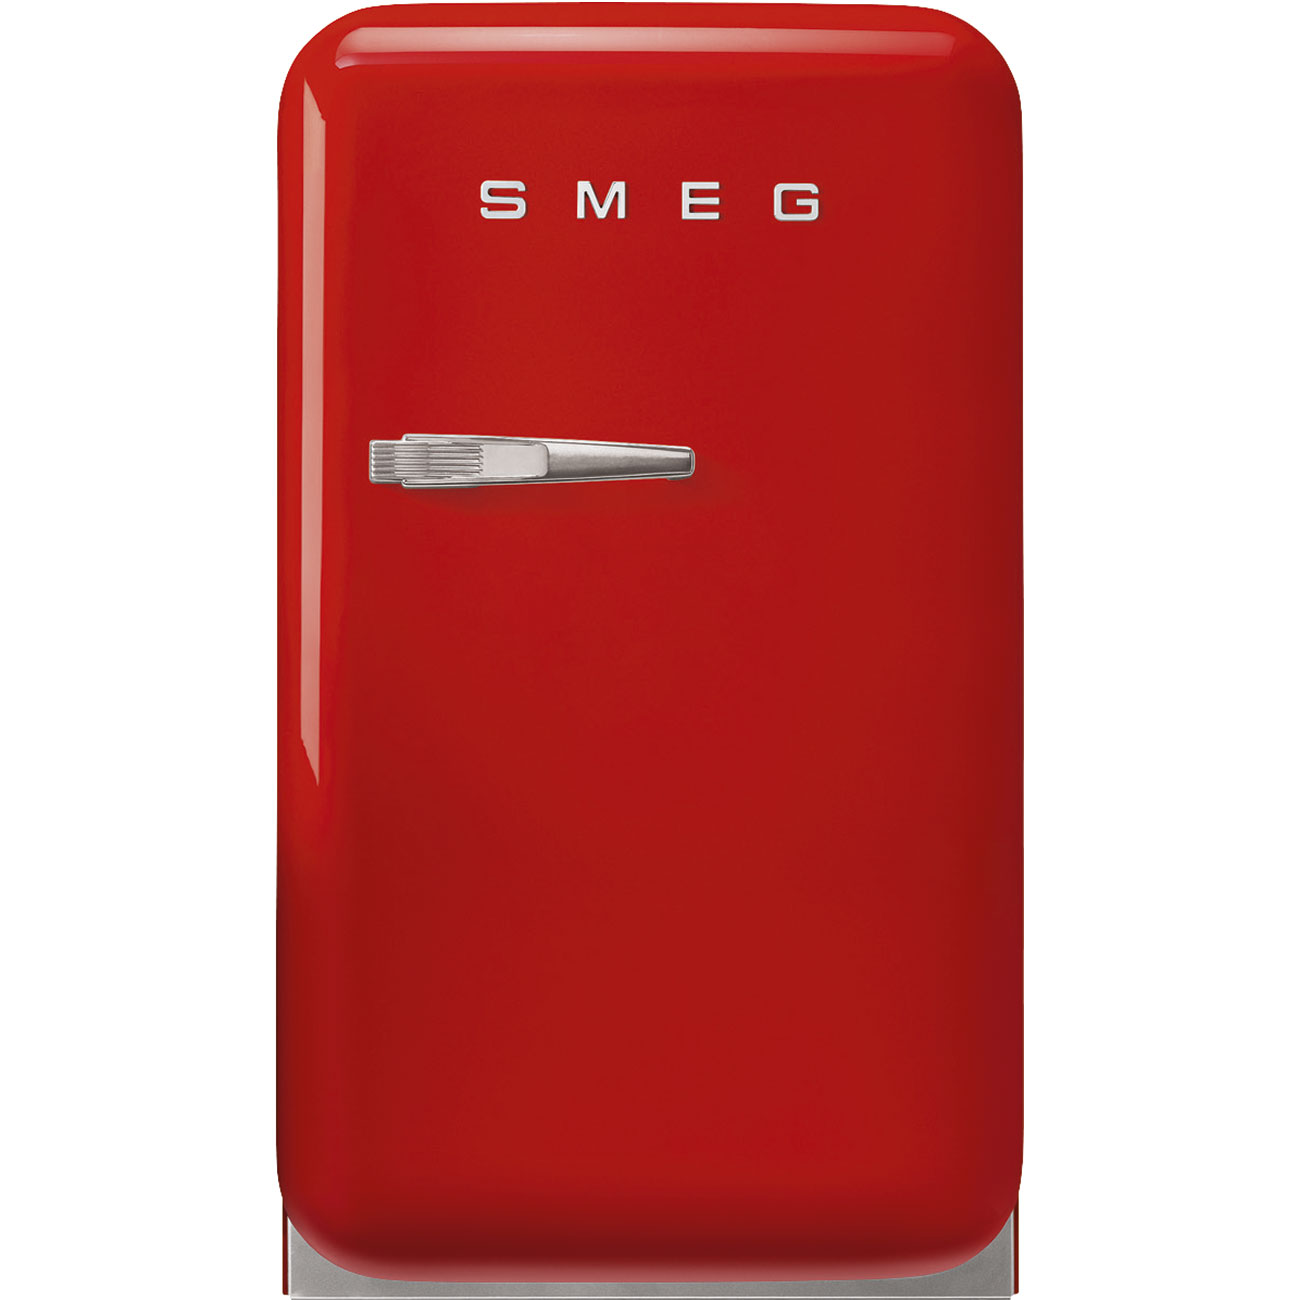 Rood koelkast - Smeg_1